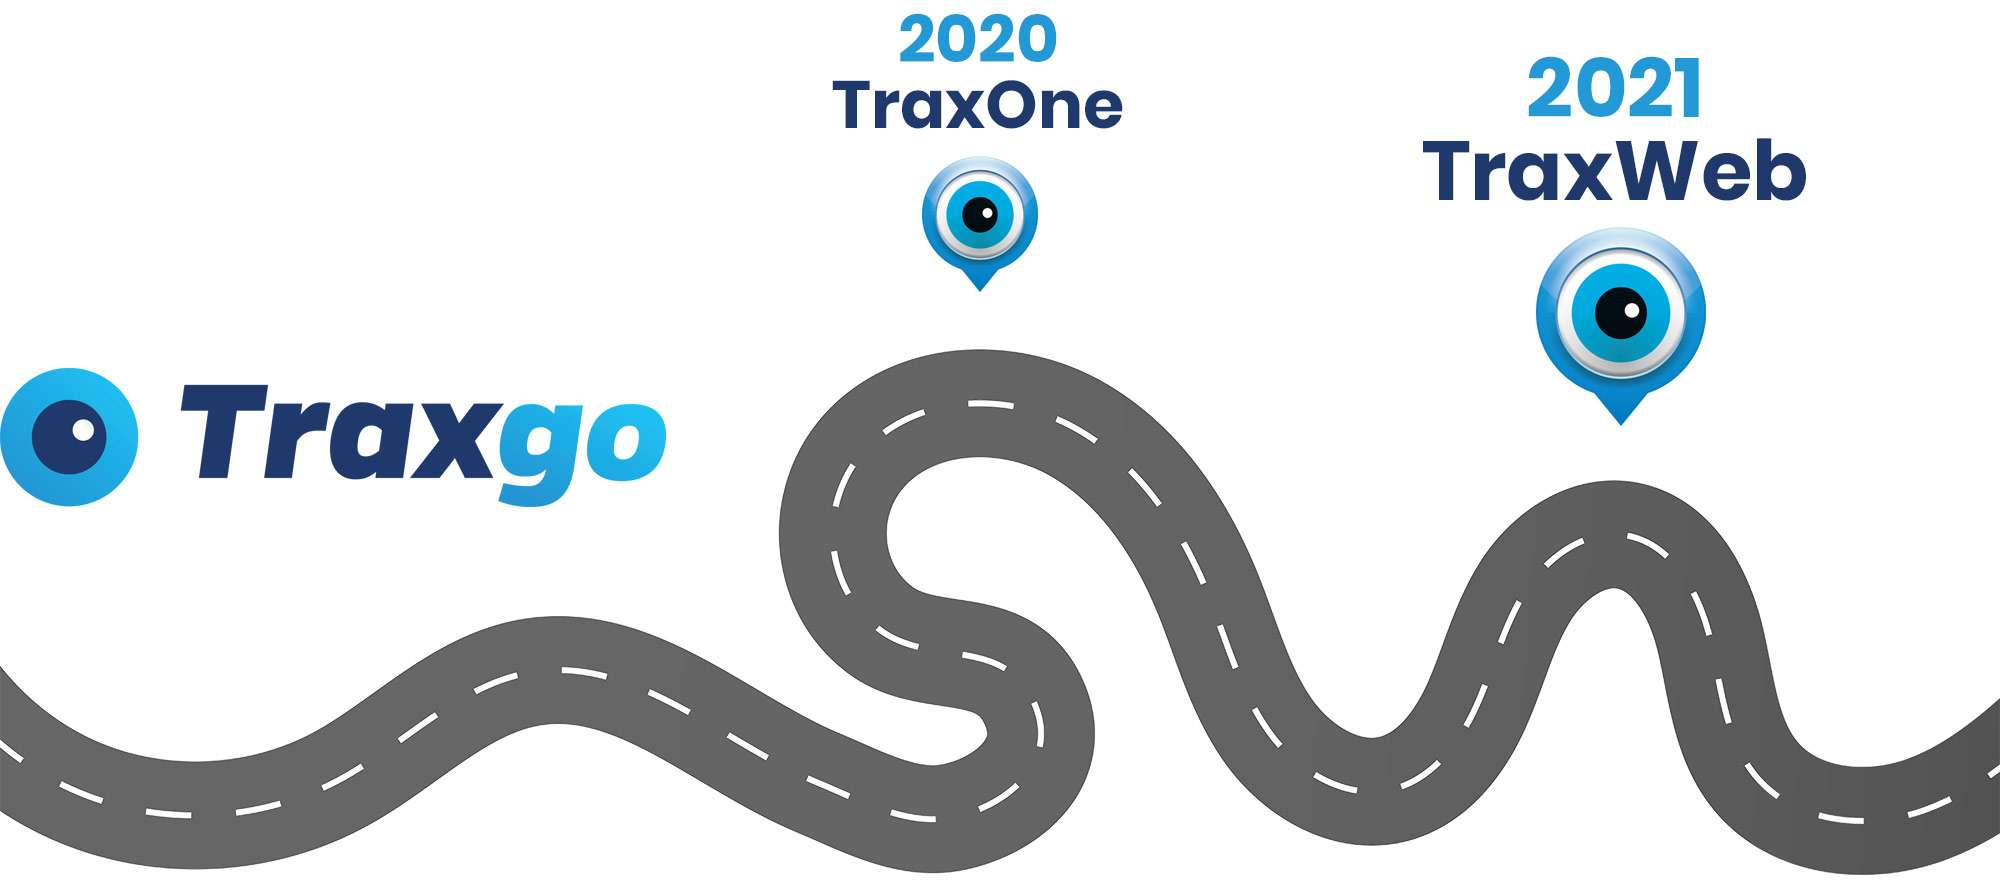 Traxgo hertekent de toekomst van track-and-trace software